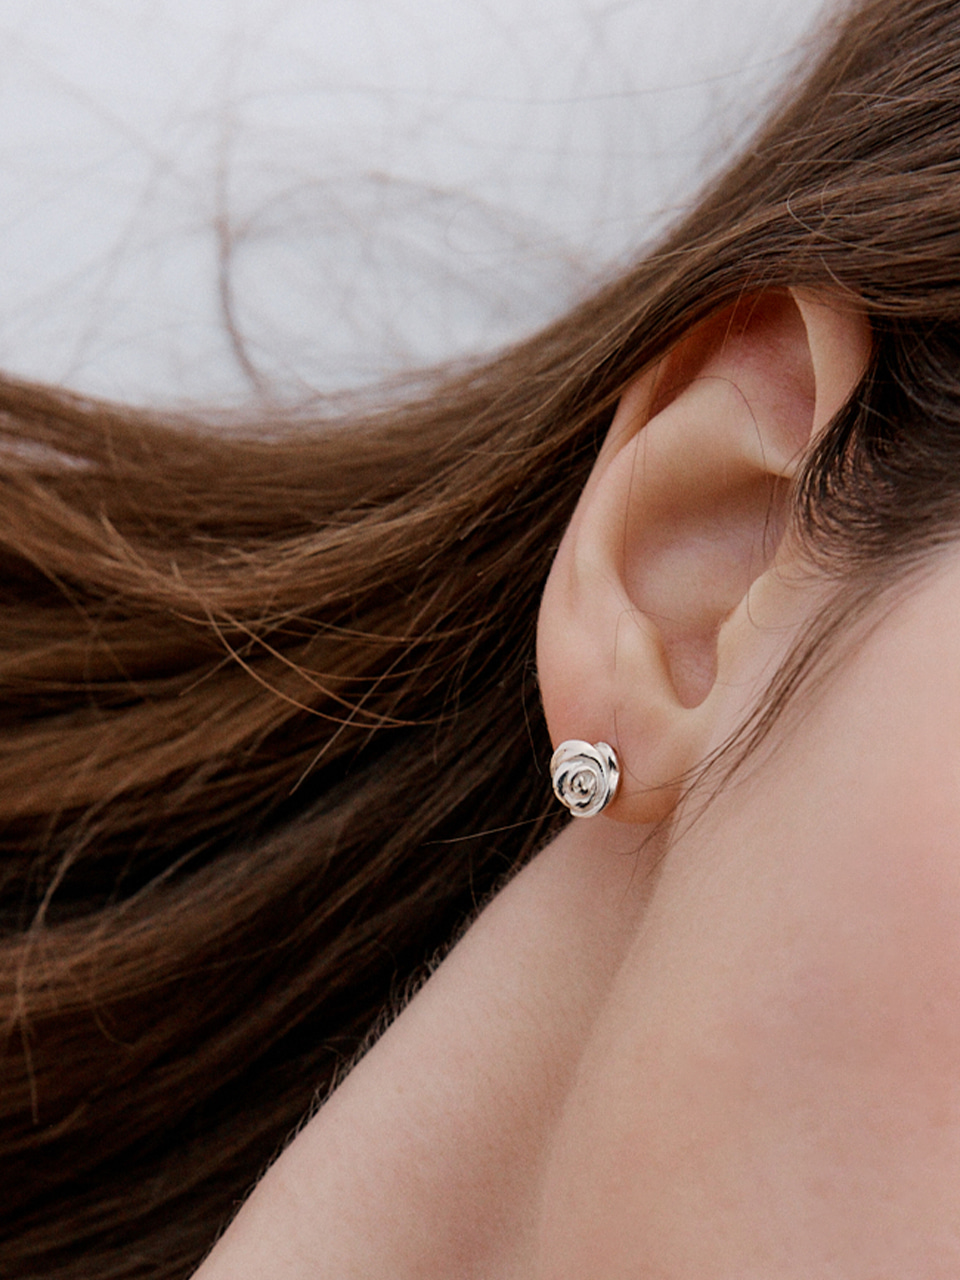 [silver925]plumpy rose earring